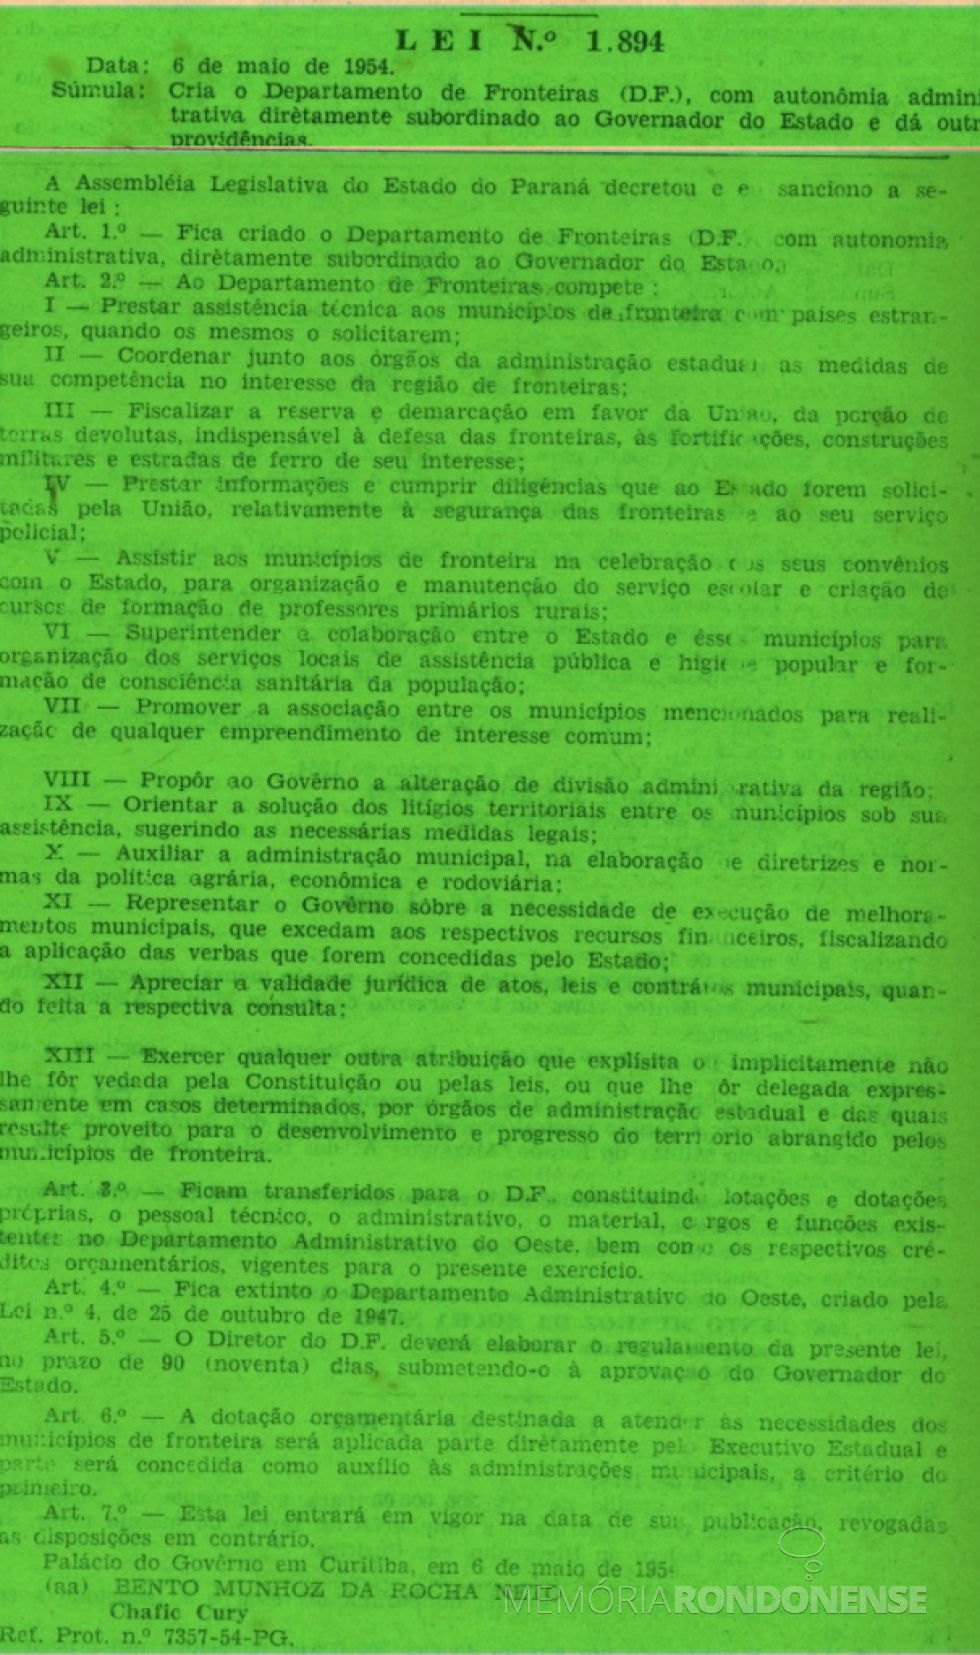 || Cópia da publicação da Lei nº 1894/1954, no Diário oficial do Estado nº  53, de 10 de maio de 1954.
Imagem (Remontada do original): Acervo Arquivo Público do Paraná - FOTO 4 - 